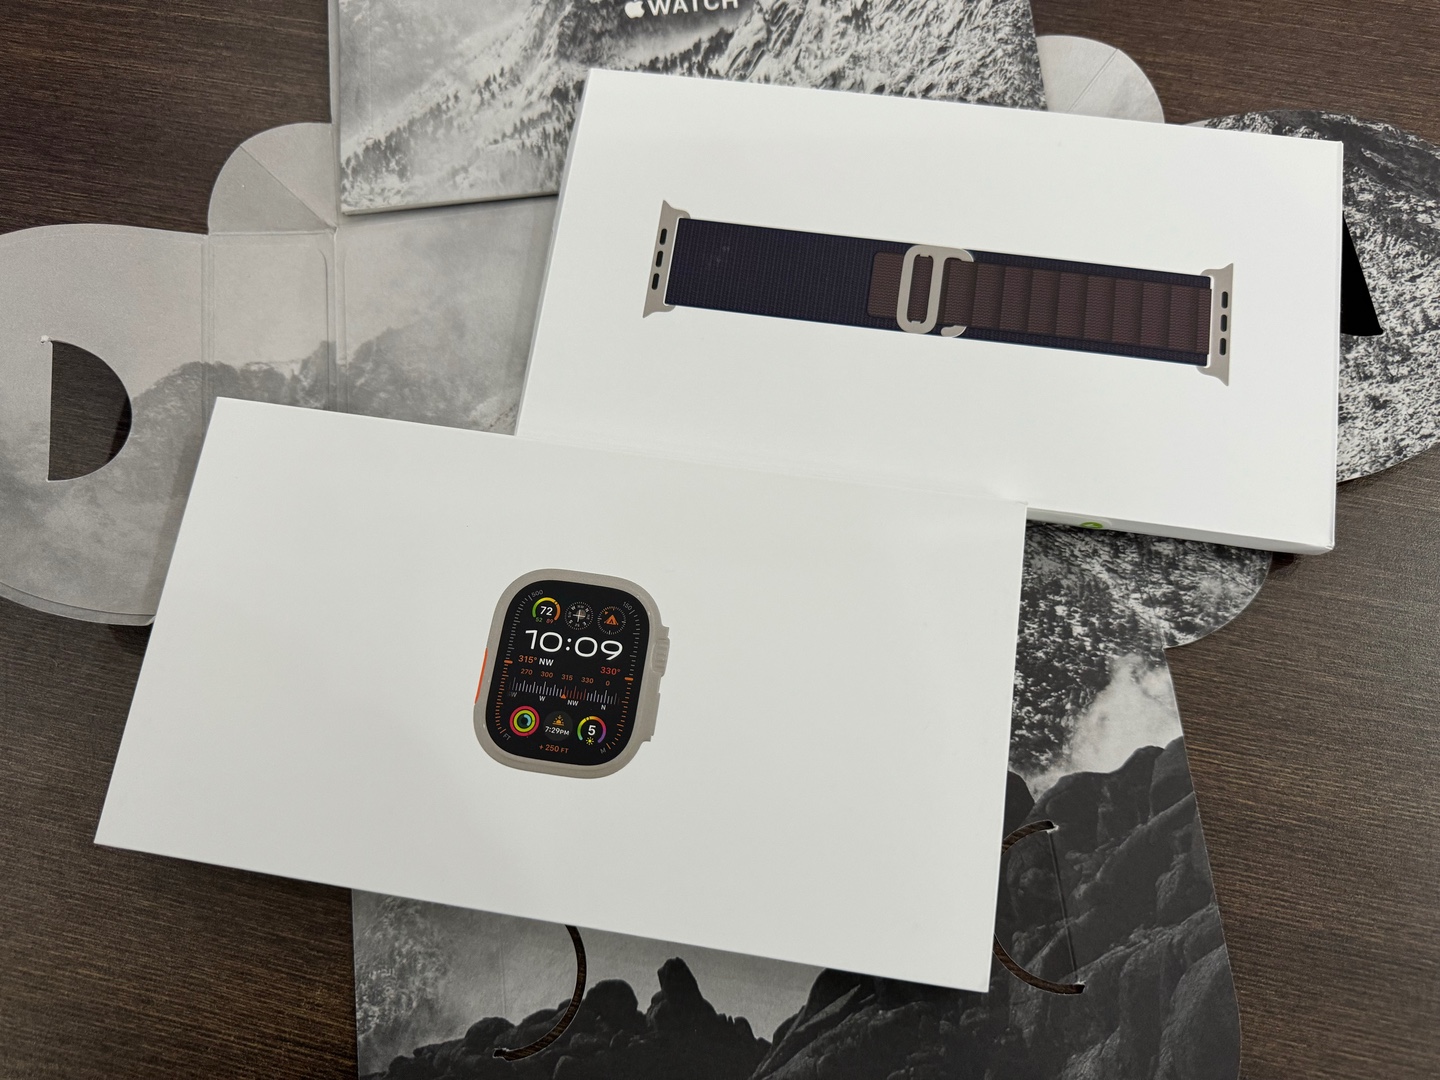 accesorios para electronica - Apple Watch Ultra 2 49mm Índigo Nuevo, garantía, RD$ 43,300 NEG 1